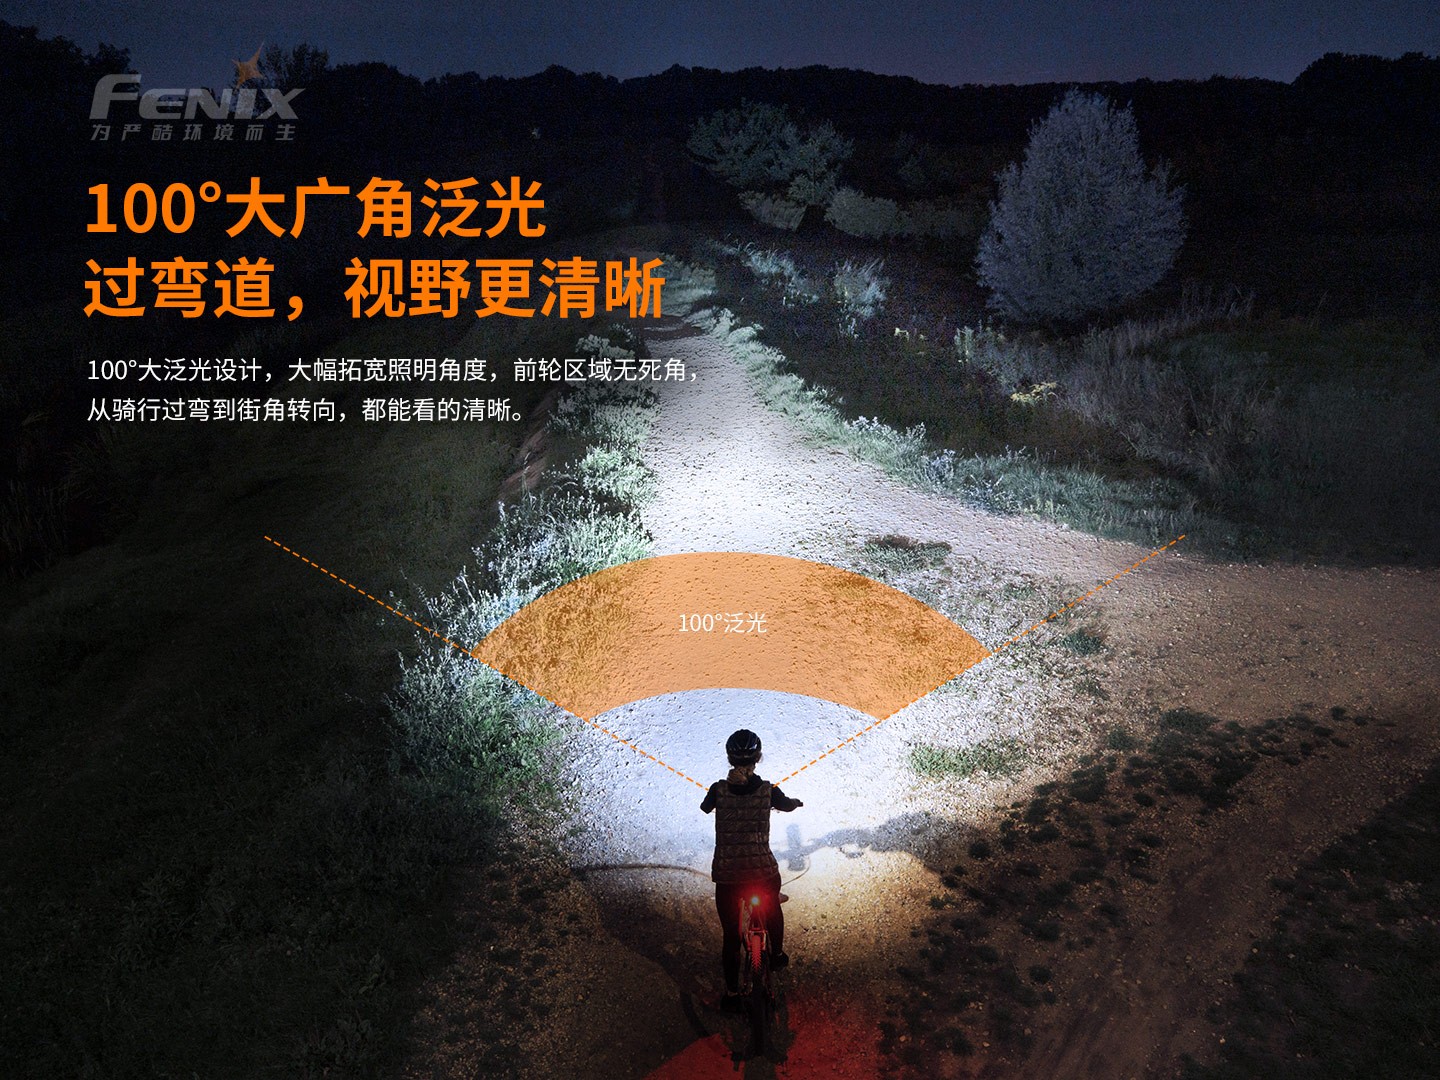 菲尼克斯（Fenix）BC26R 超高亮可充式自行车前灯